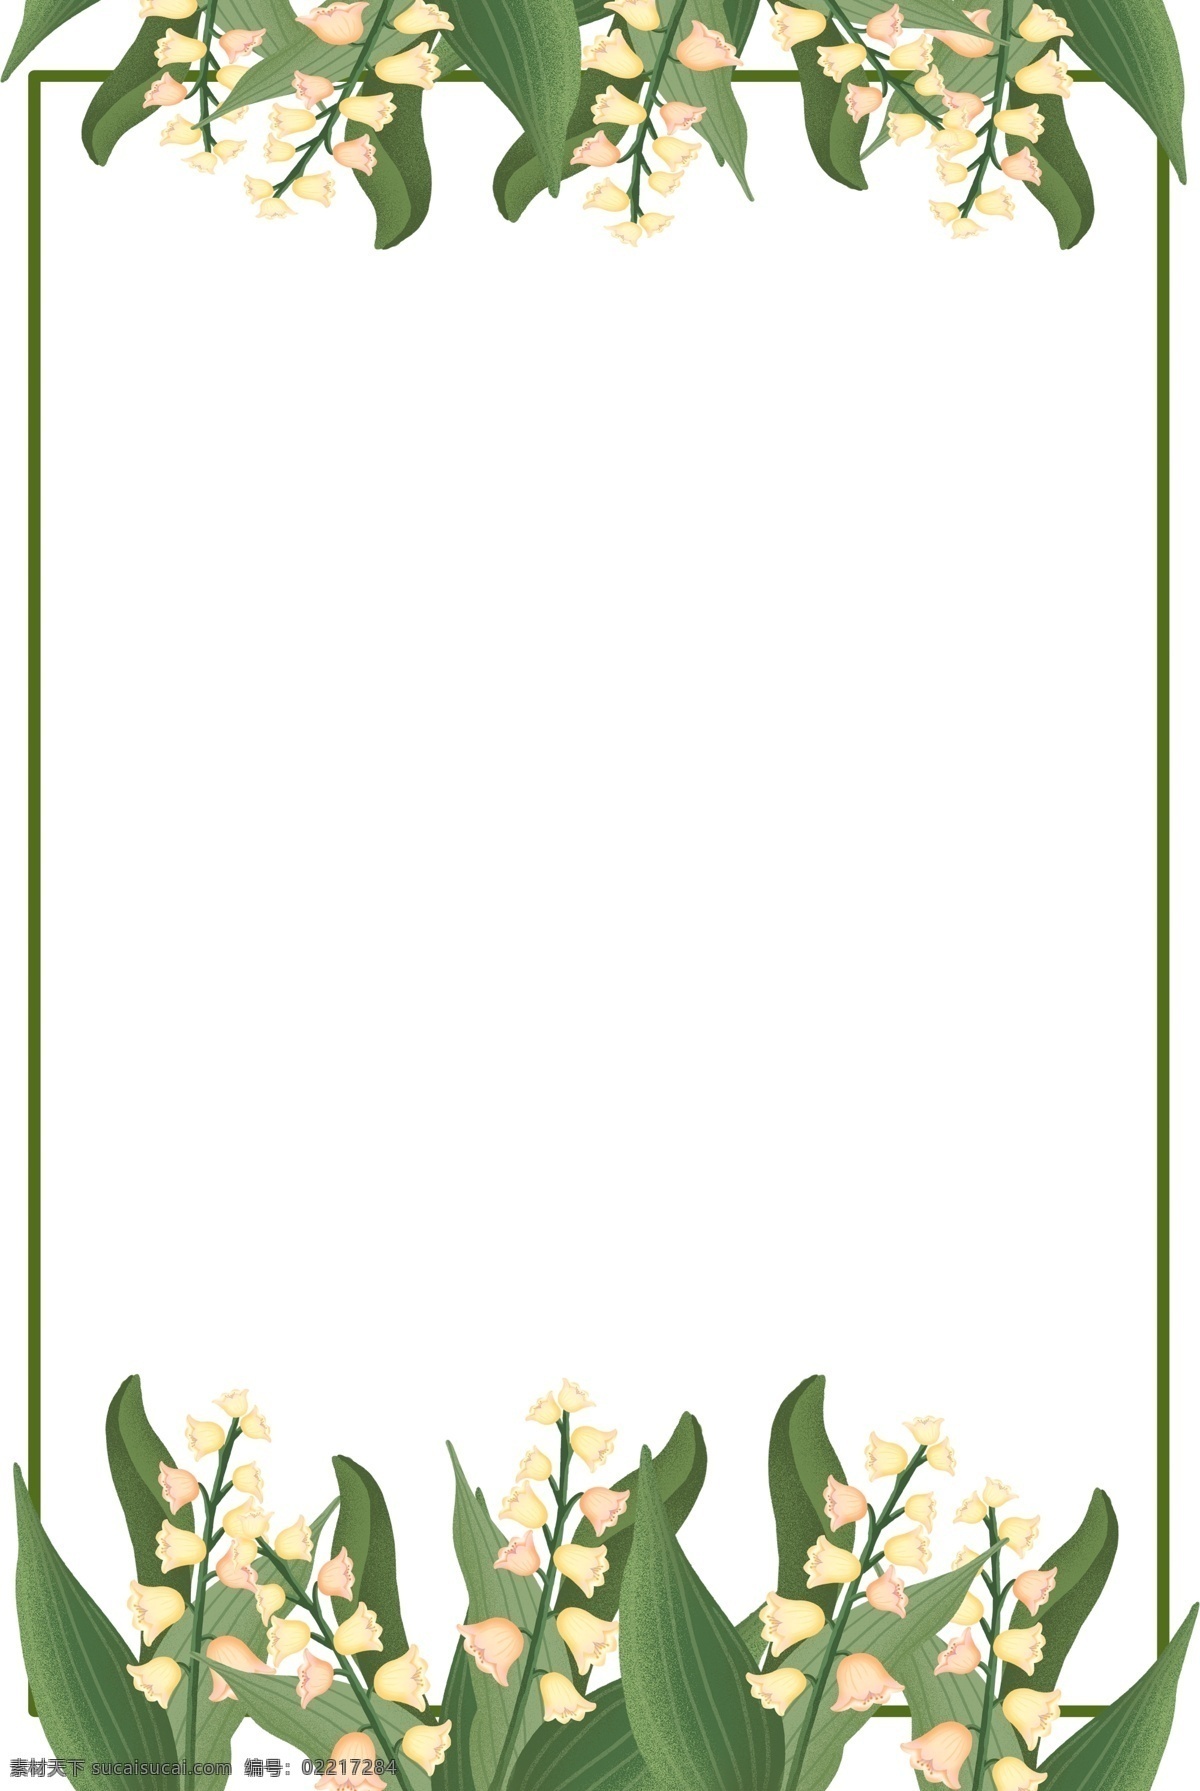 手绘 铃兰 花朵 插画 边框 优雅 自然 草本植物 花朵花蕊 大叶子 清新 淡雅 可爱